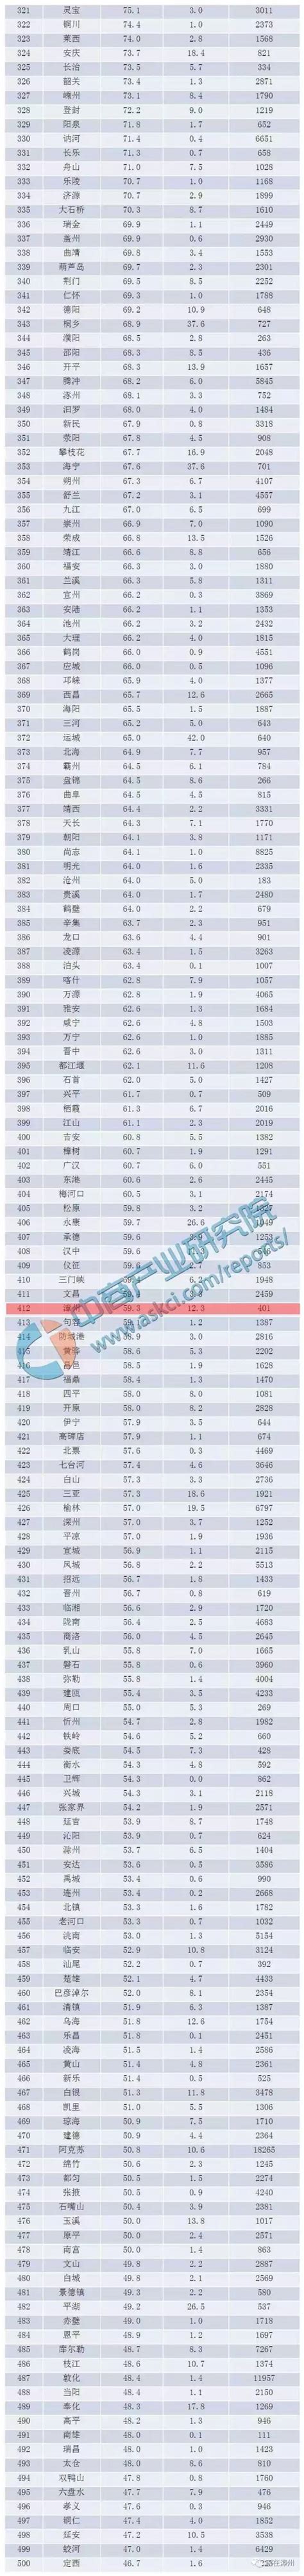 漳州市上市公司市值排名-漳州哪家企业市值比较高-排行榜123网